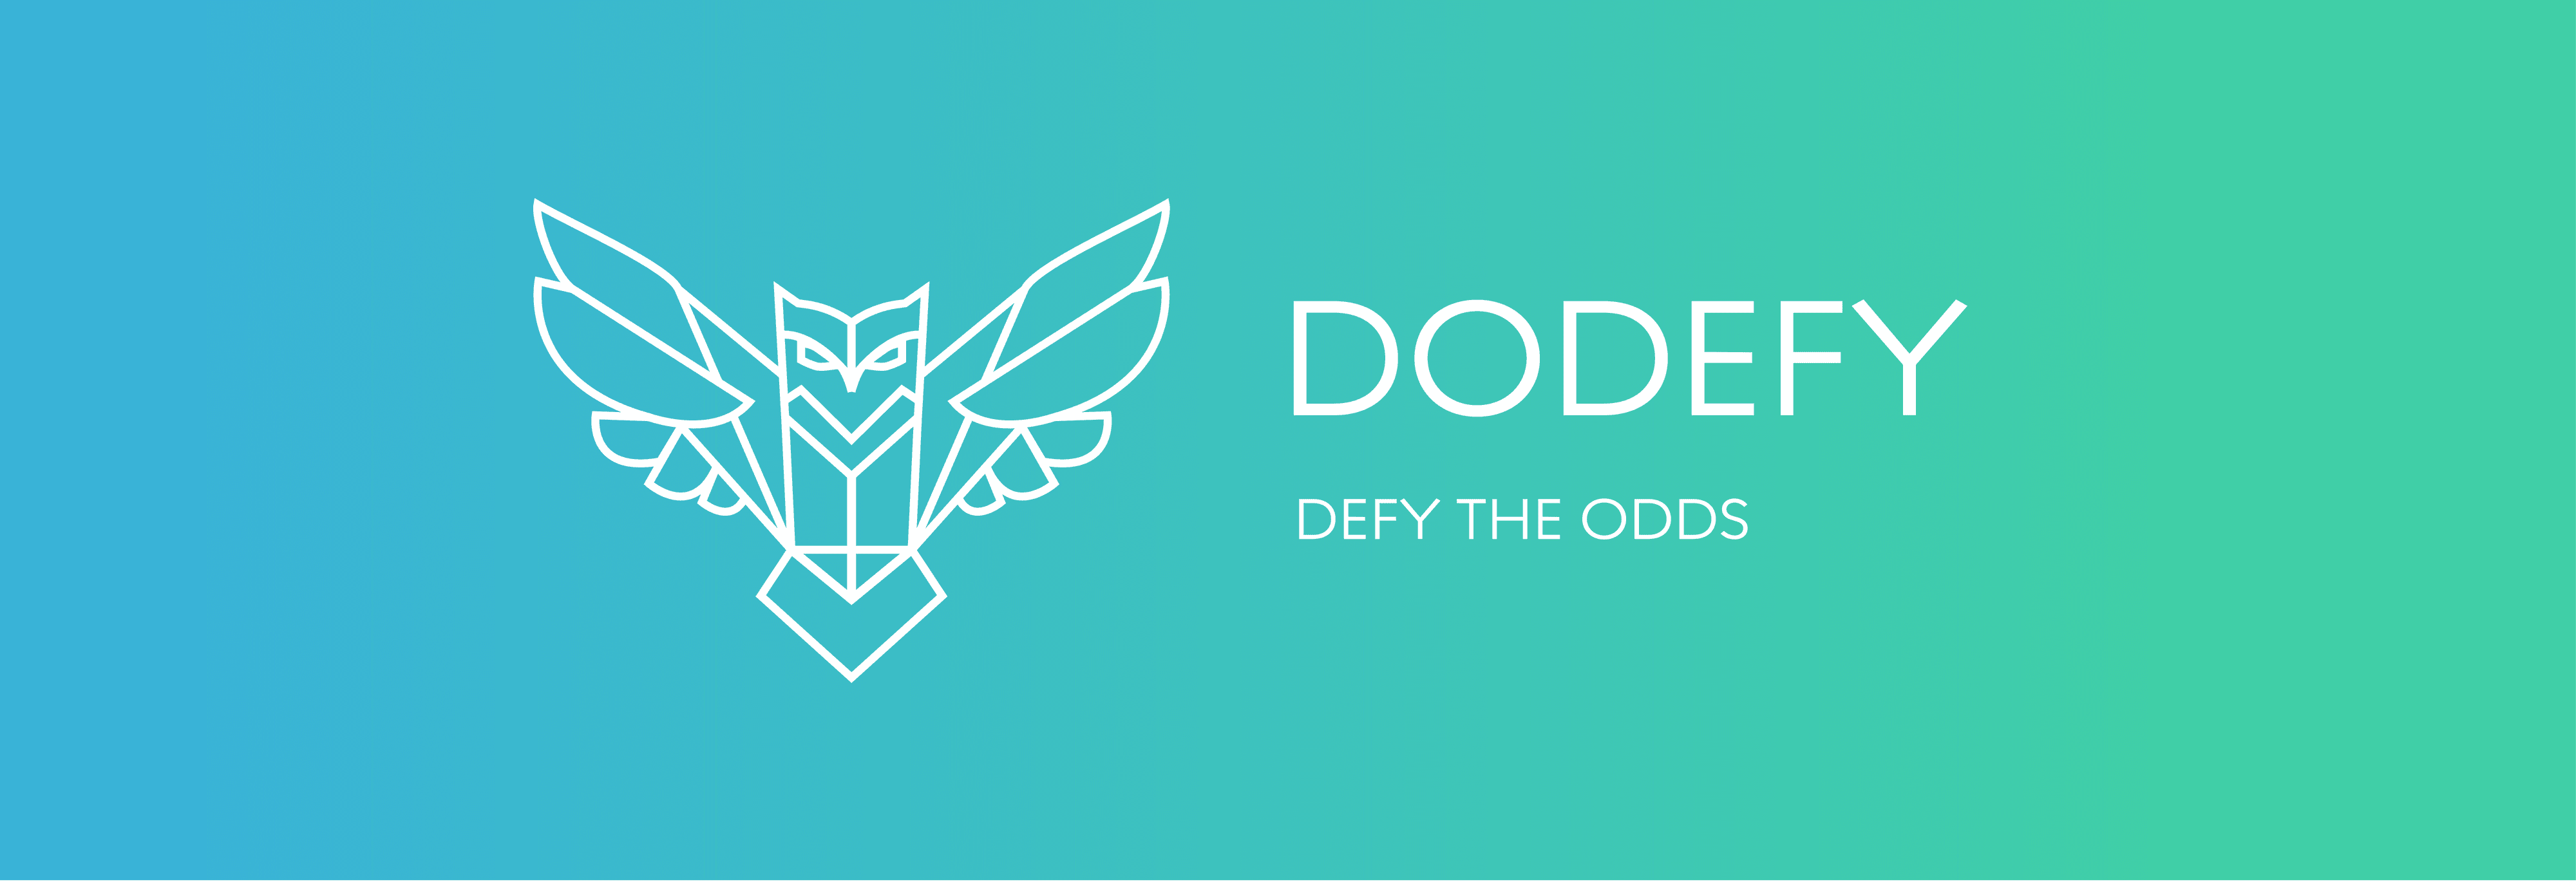 dodefy banner